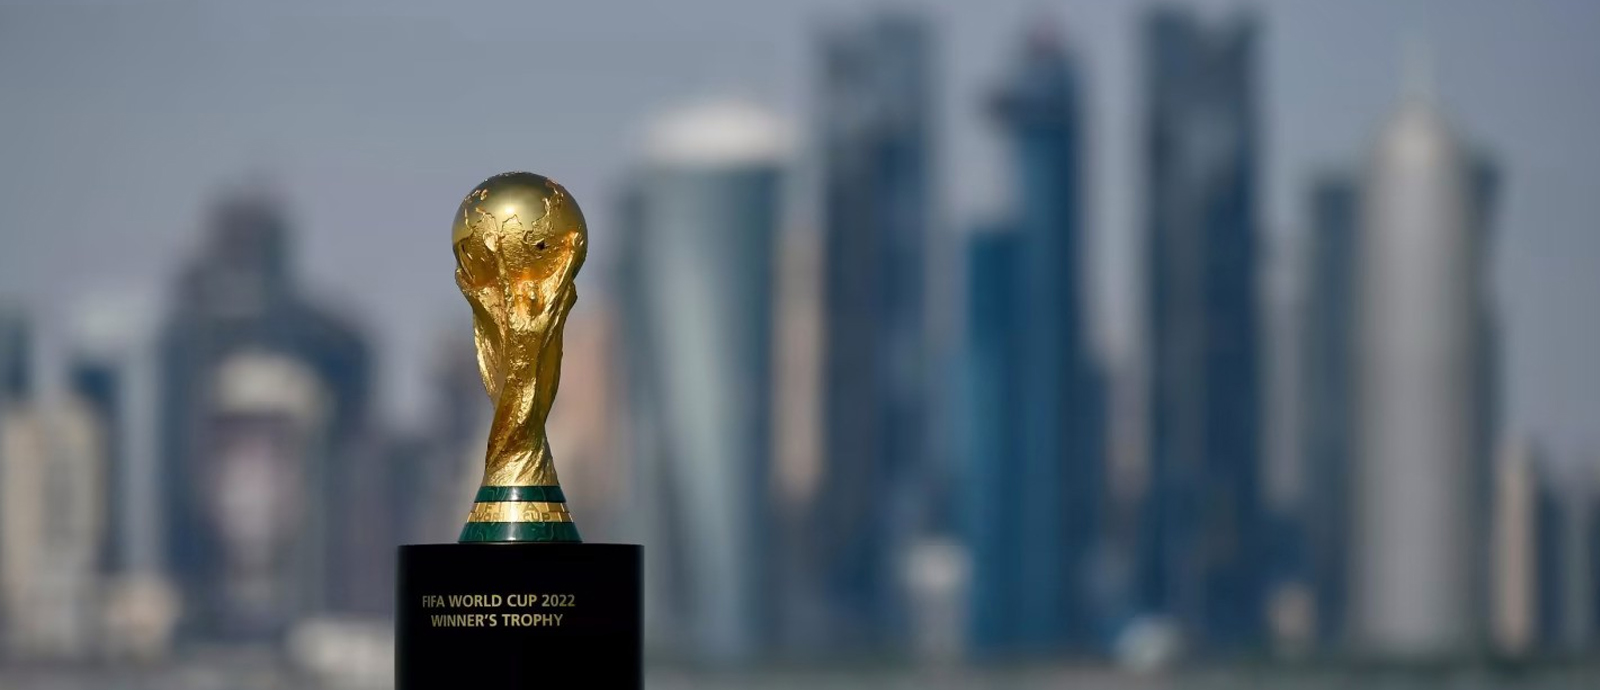 قنوات مجانية تنقل كأس العالم قطر 2022